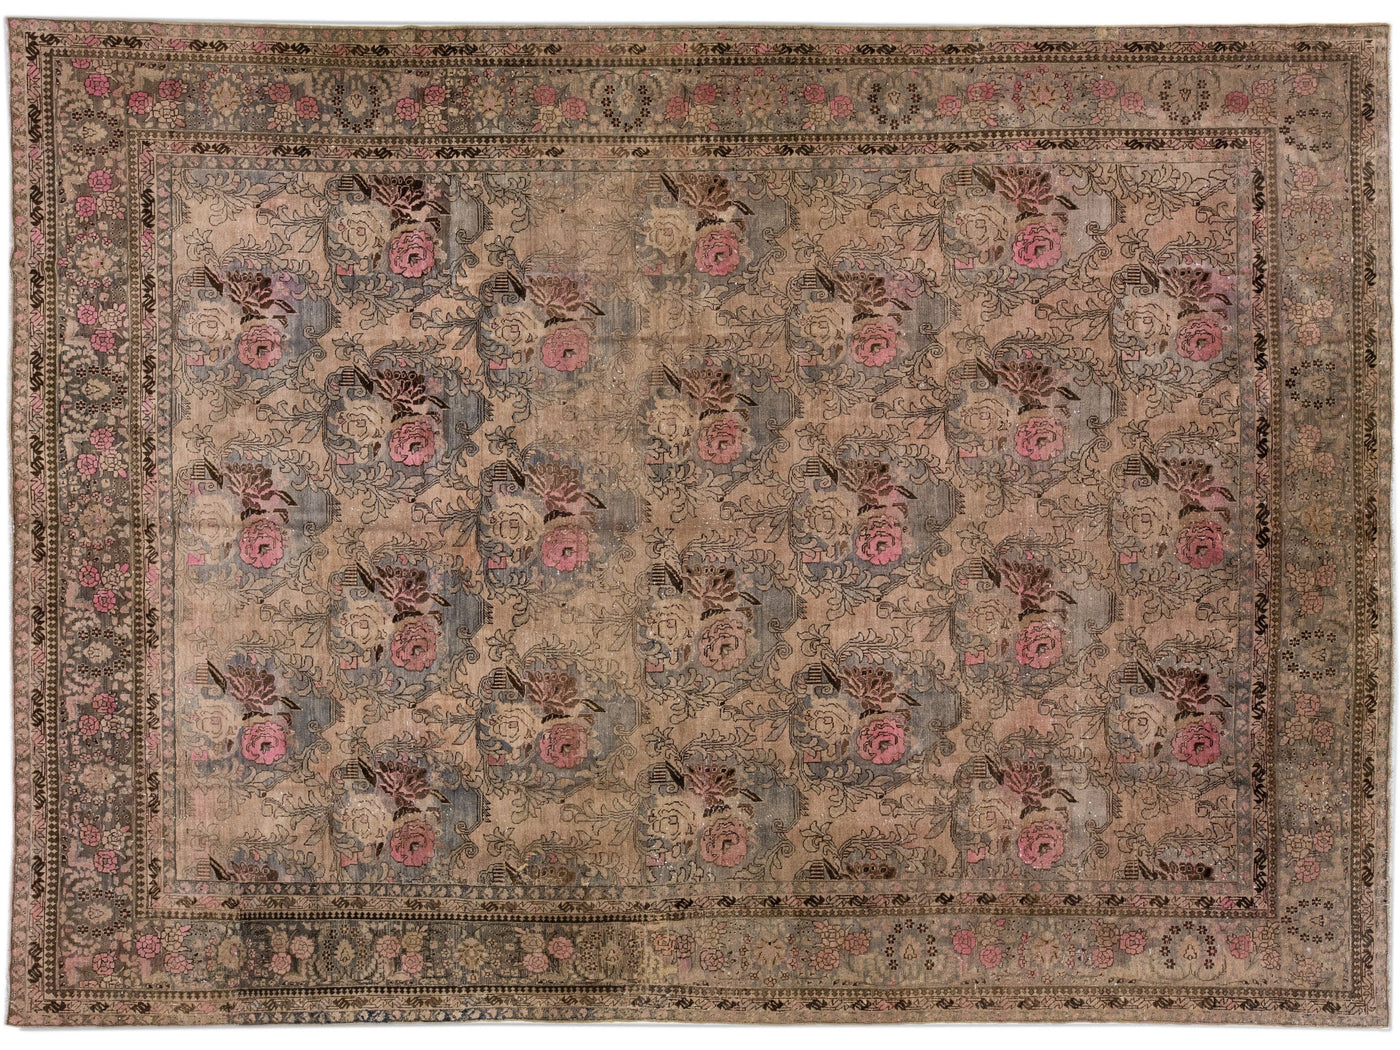 Antique Bidjar Handmade Allover Floral Pattern Wool Rug In Brown